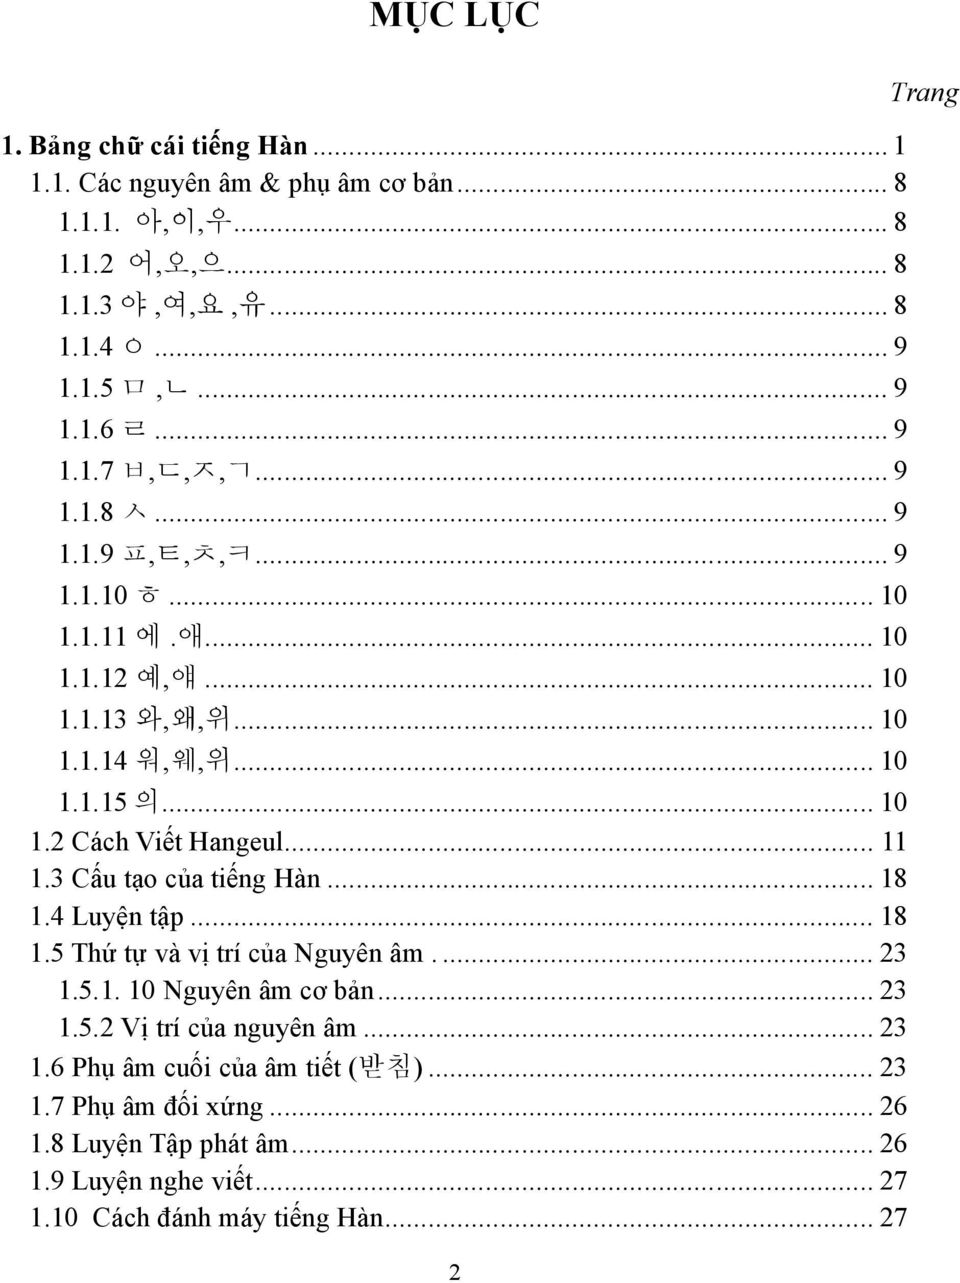 .. 11 1.3 Cấu tạo của tiếng Hàn... 18 1.4 Luyện tập... 18 1.5 Thứ tự và vị trí của Nguyên âm.... 23 1.5.1. 10 Nguyên âm cơ bản... 23 1.5.2 Vị trí của nguyên âm... 23 1.6 Phụ âm cuối của âm tiết ( 받침 ).